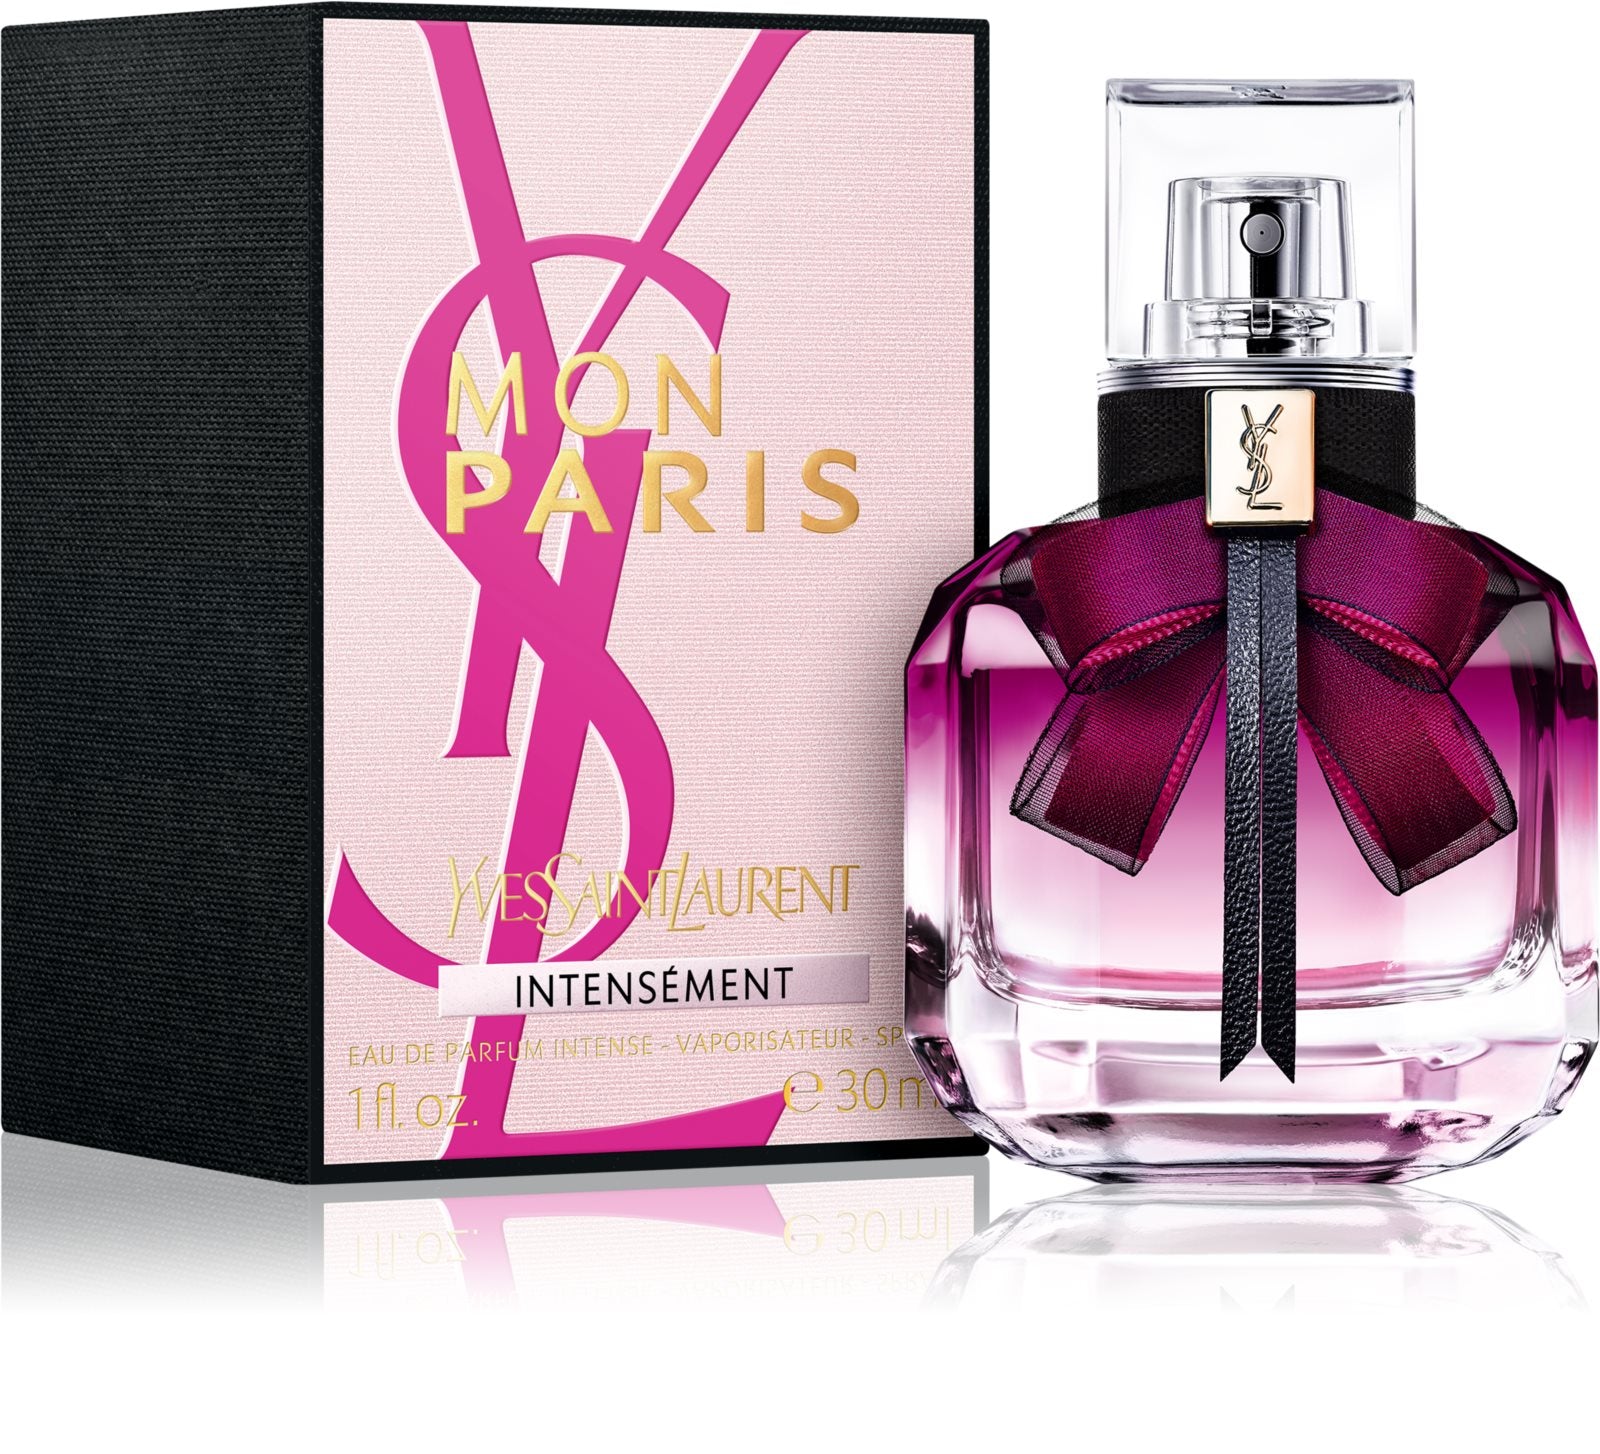 AG Eau BS24 de Mon – Switzerland 30 Saint Laurent Intensément Parfum ml Paris Yves